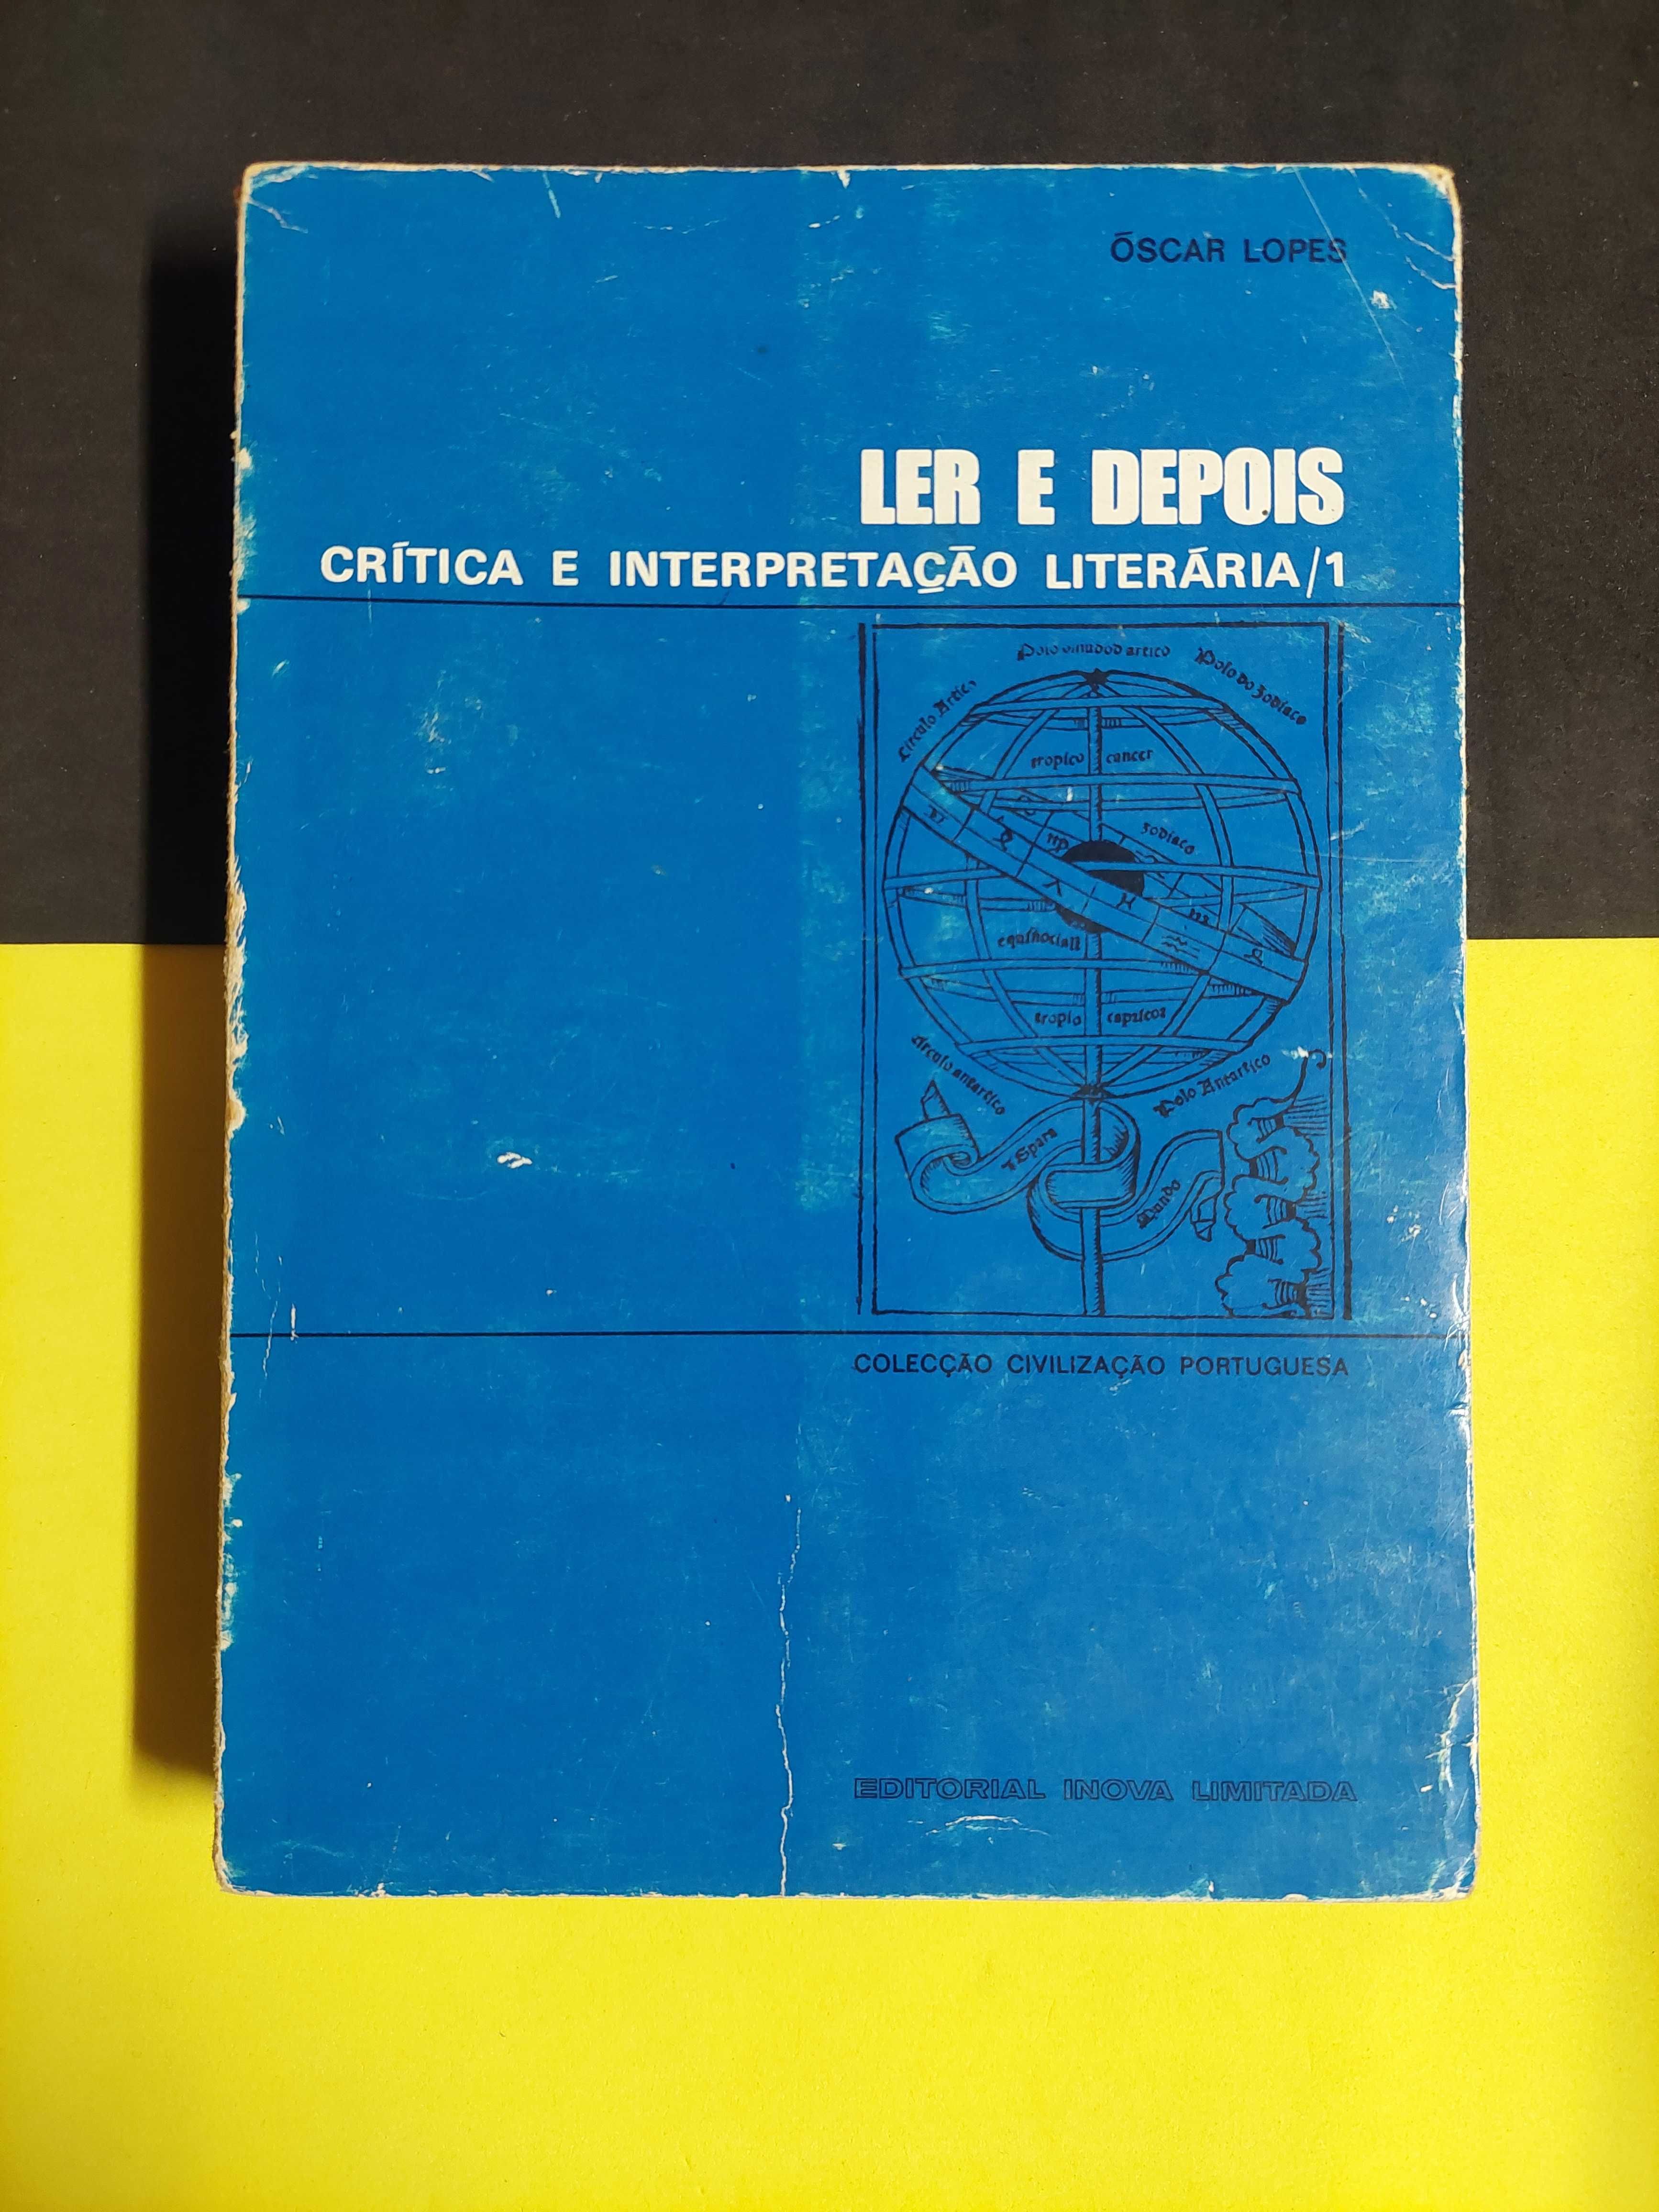 Óscar Lopes - Ler e depois/Modo de ler, volume I e II